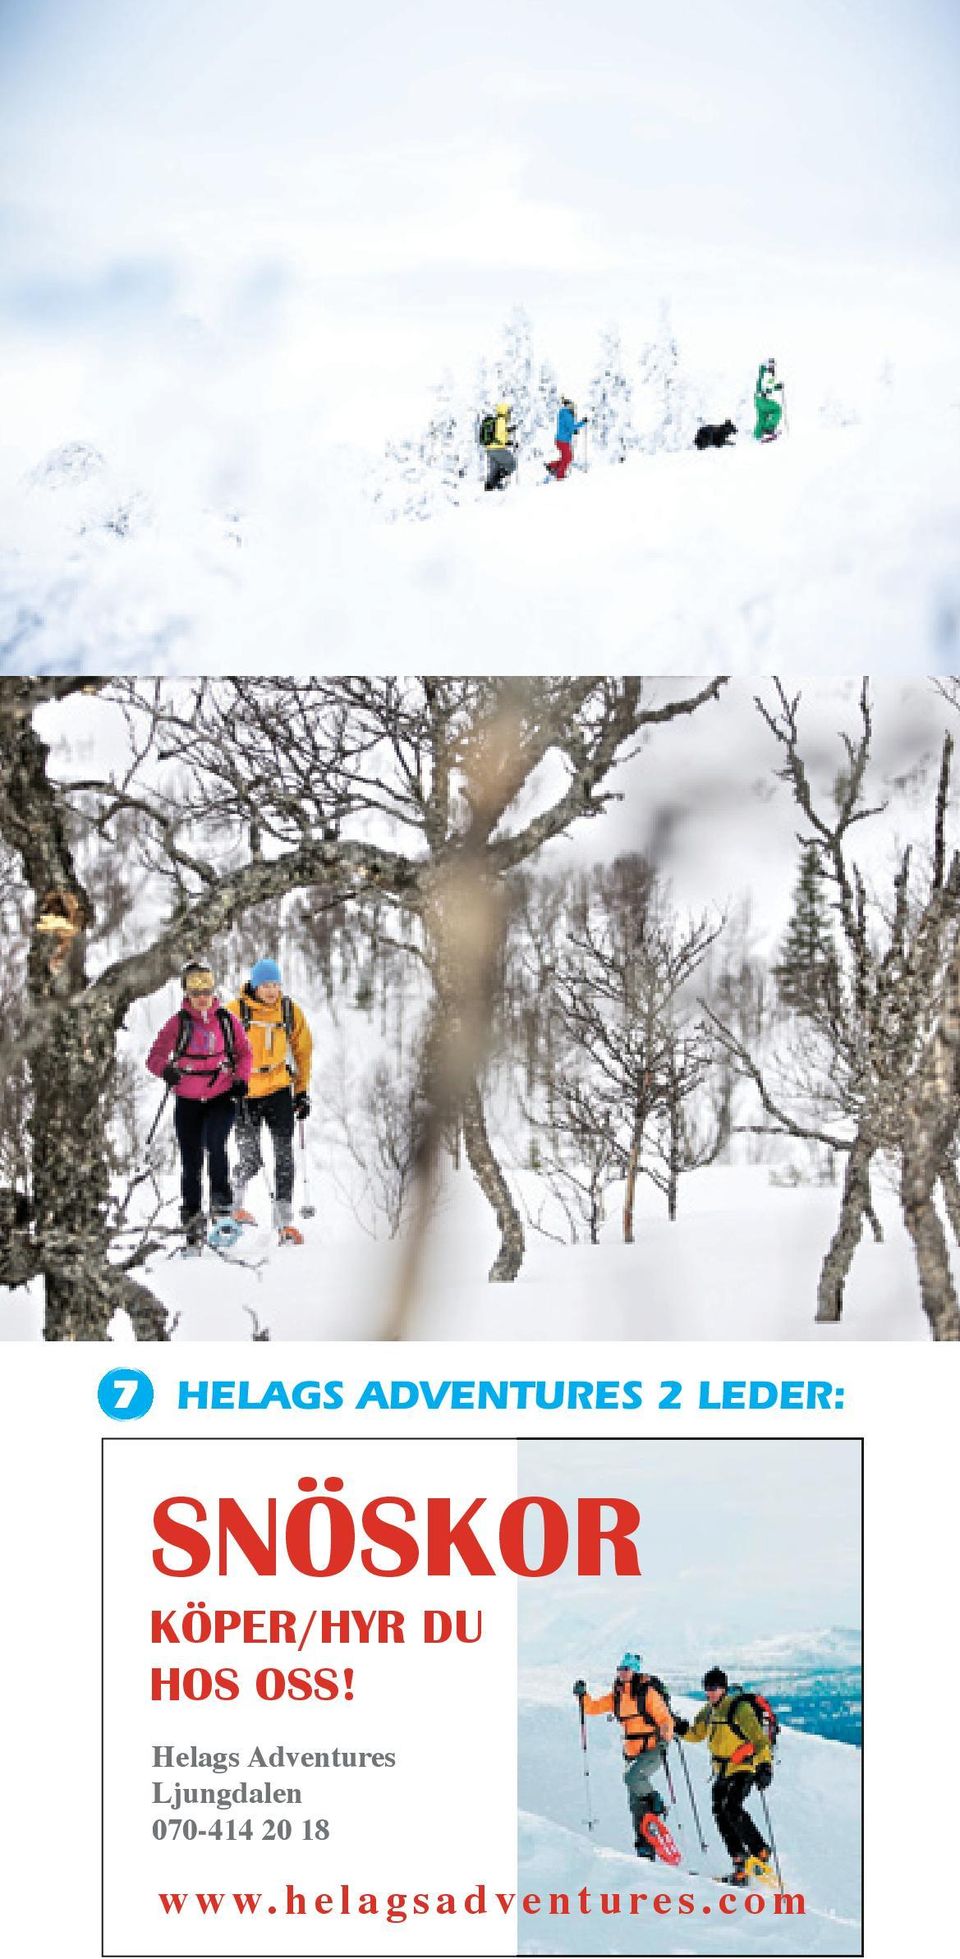 Helags Adventures Ljungdalen 070-414